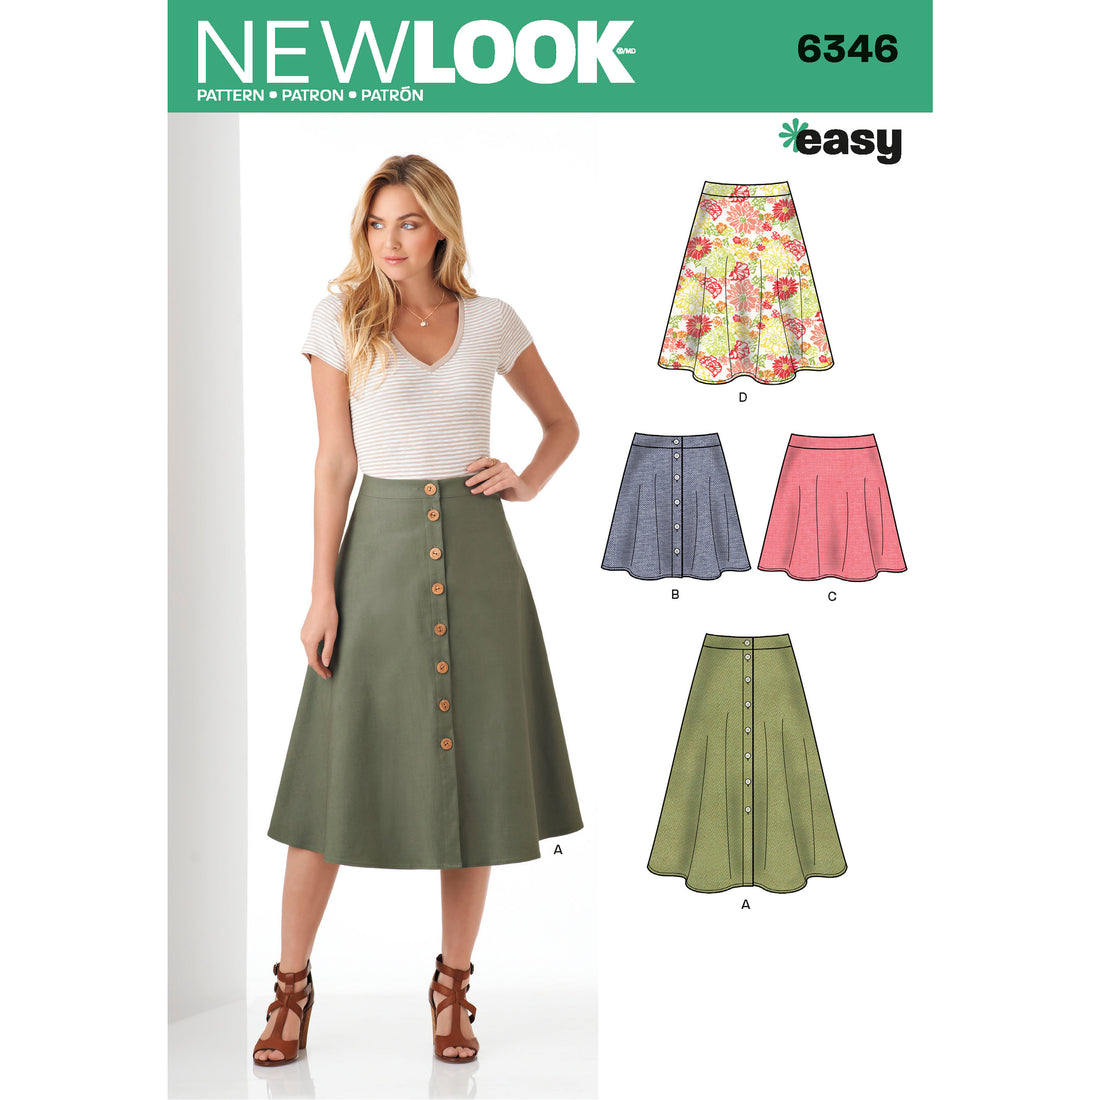 New Look 6346 – Jenny Stitches Fabrics